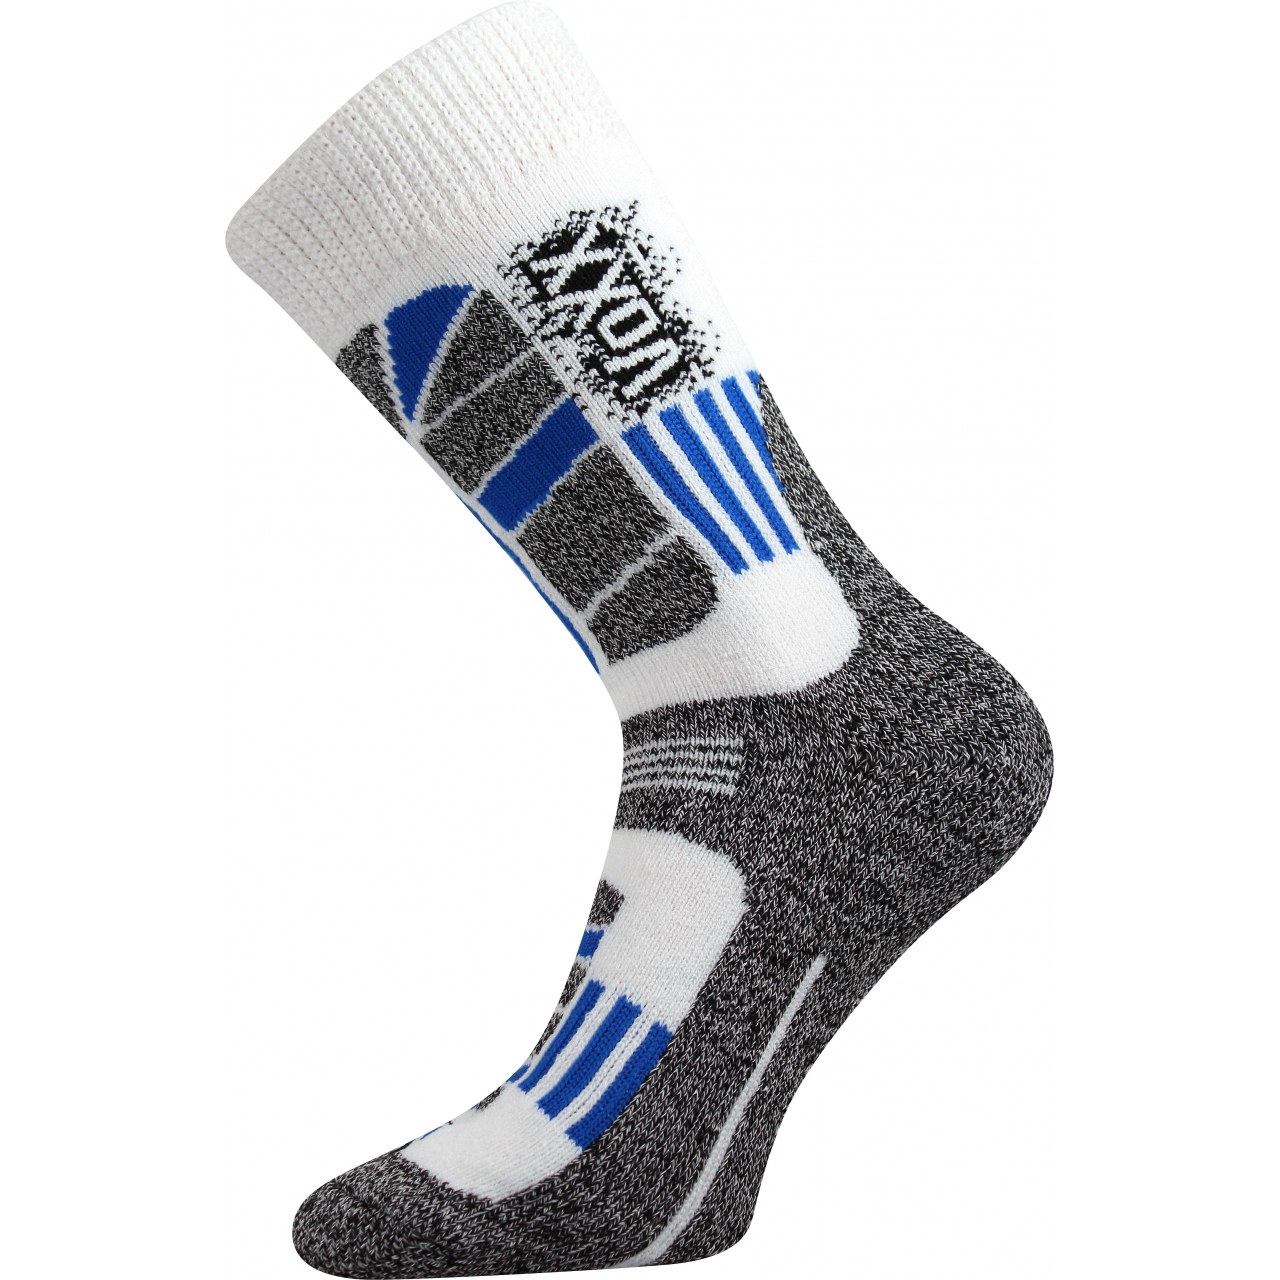 Ponožky unisex termo Voxx Traction I - bílé-šedé, 39-42